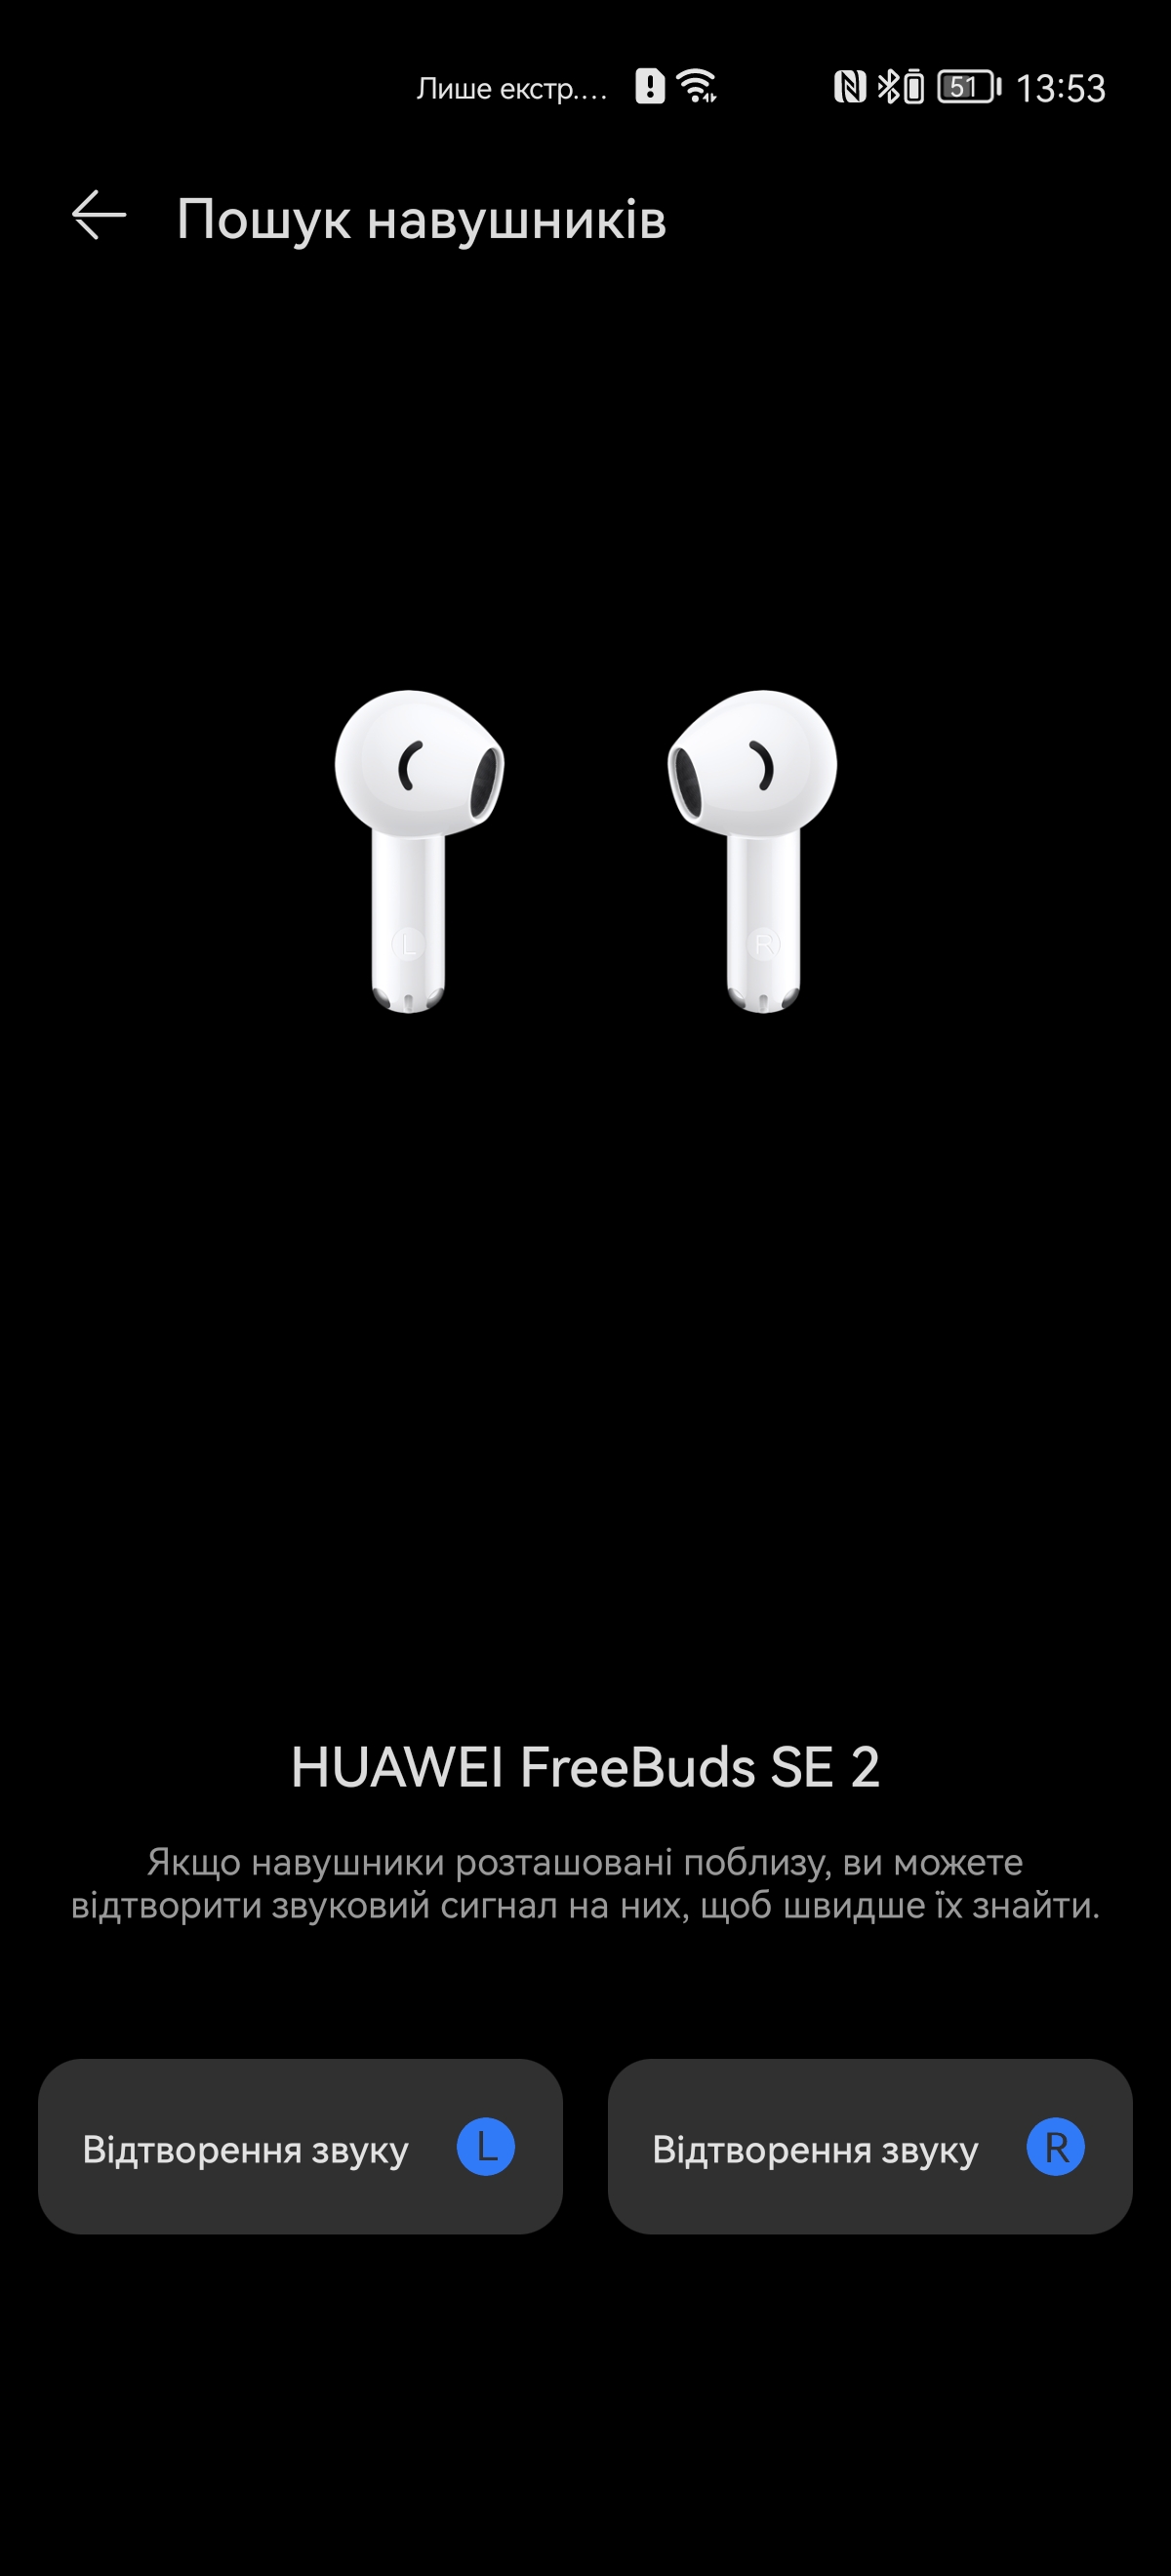 Huawei FreeBuds SE 2 TWS Kopfhörer Test: Garantiert 6 Stunden Musik in 4  Gramm | In-Ear-Kopfhörer